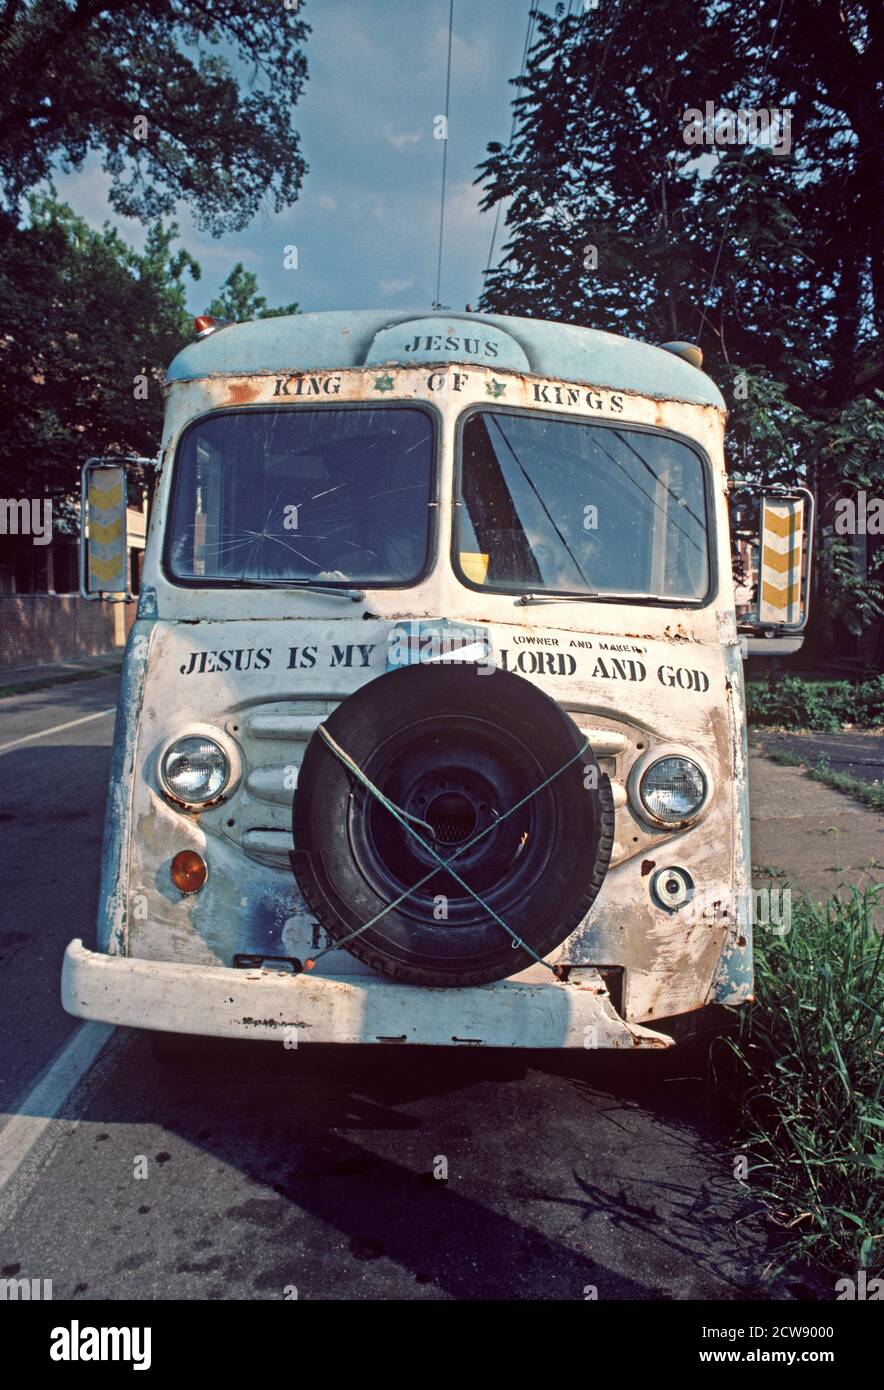 ABANDONED JESUS BUS, DOWNTOWN SAVANNAH, GEORGIA, USA, 1980s Stock Photo